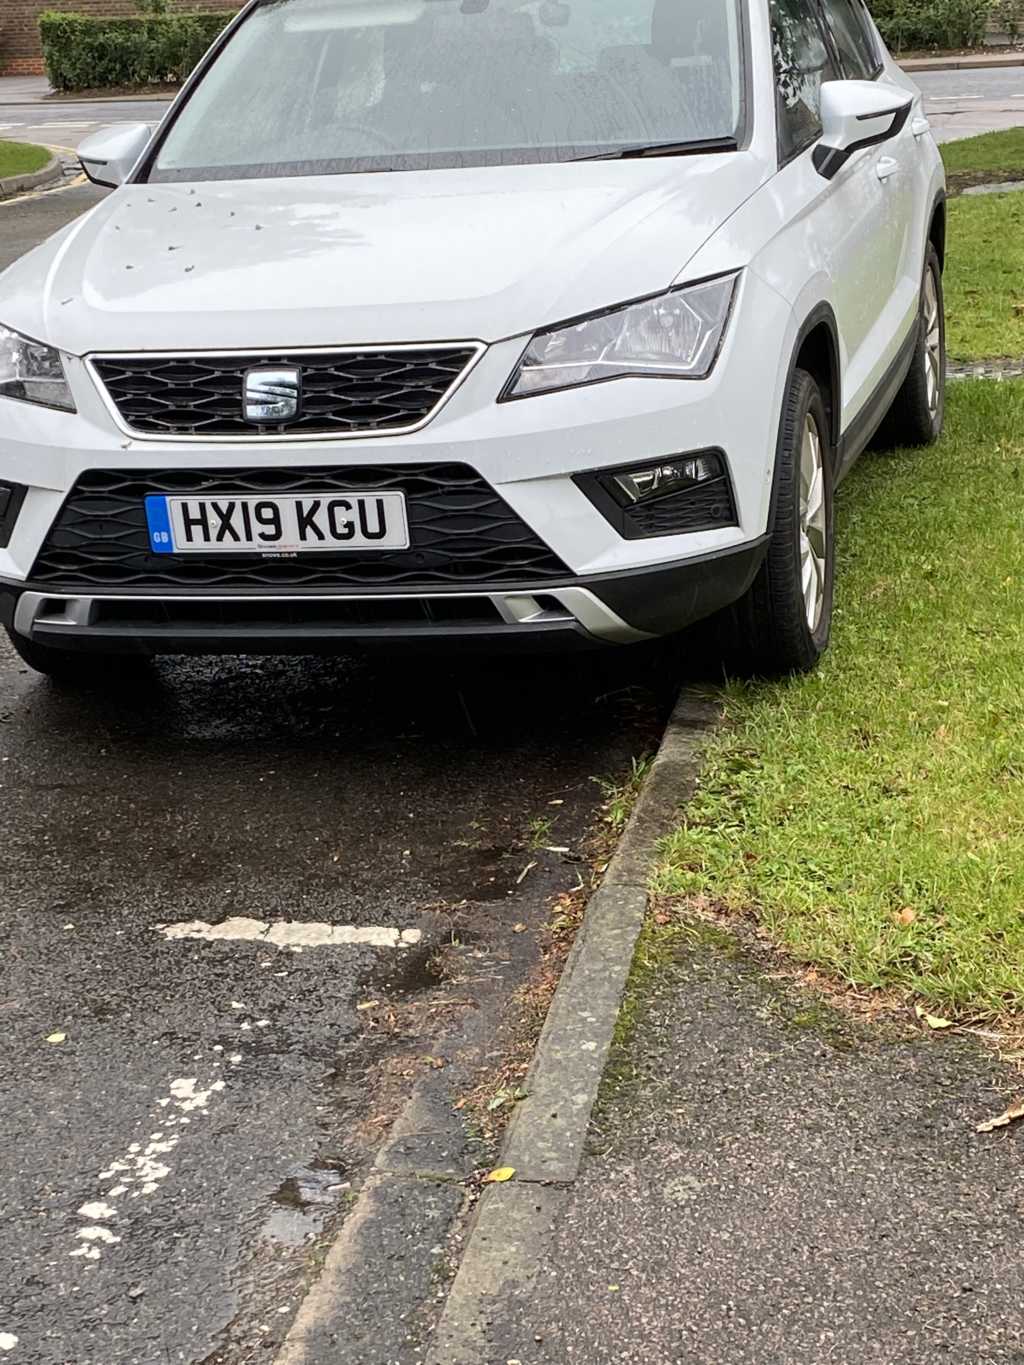 HX19 KGU displaying crap parking